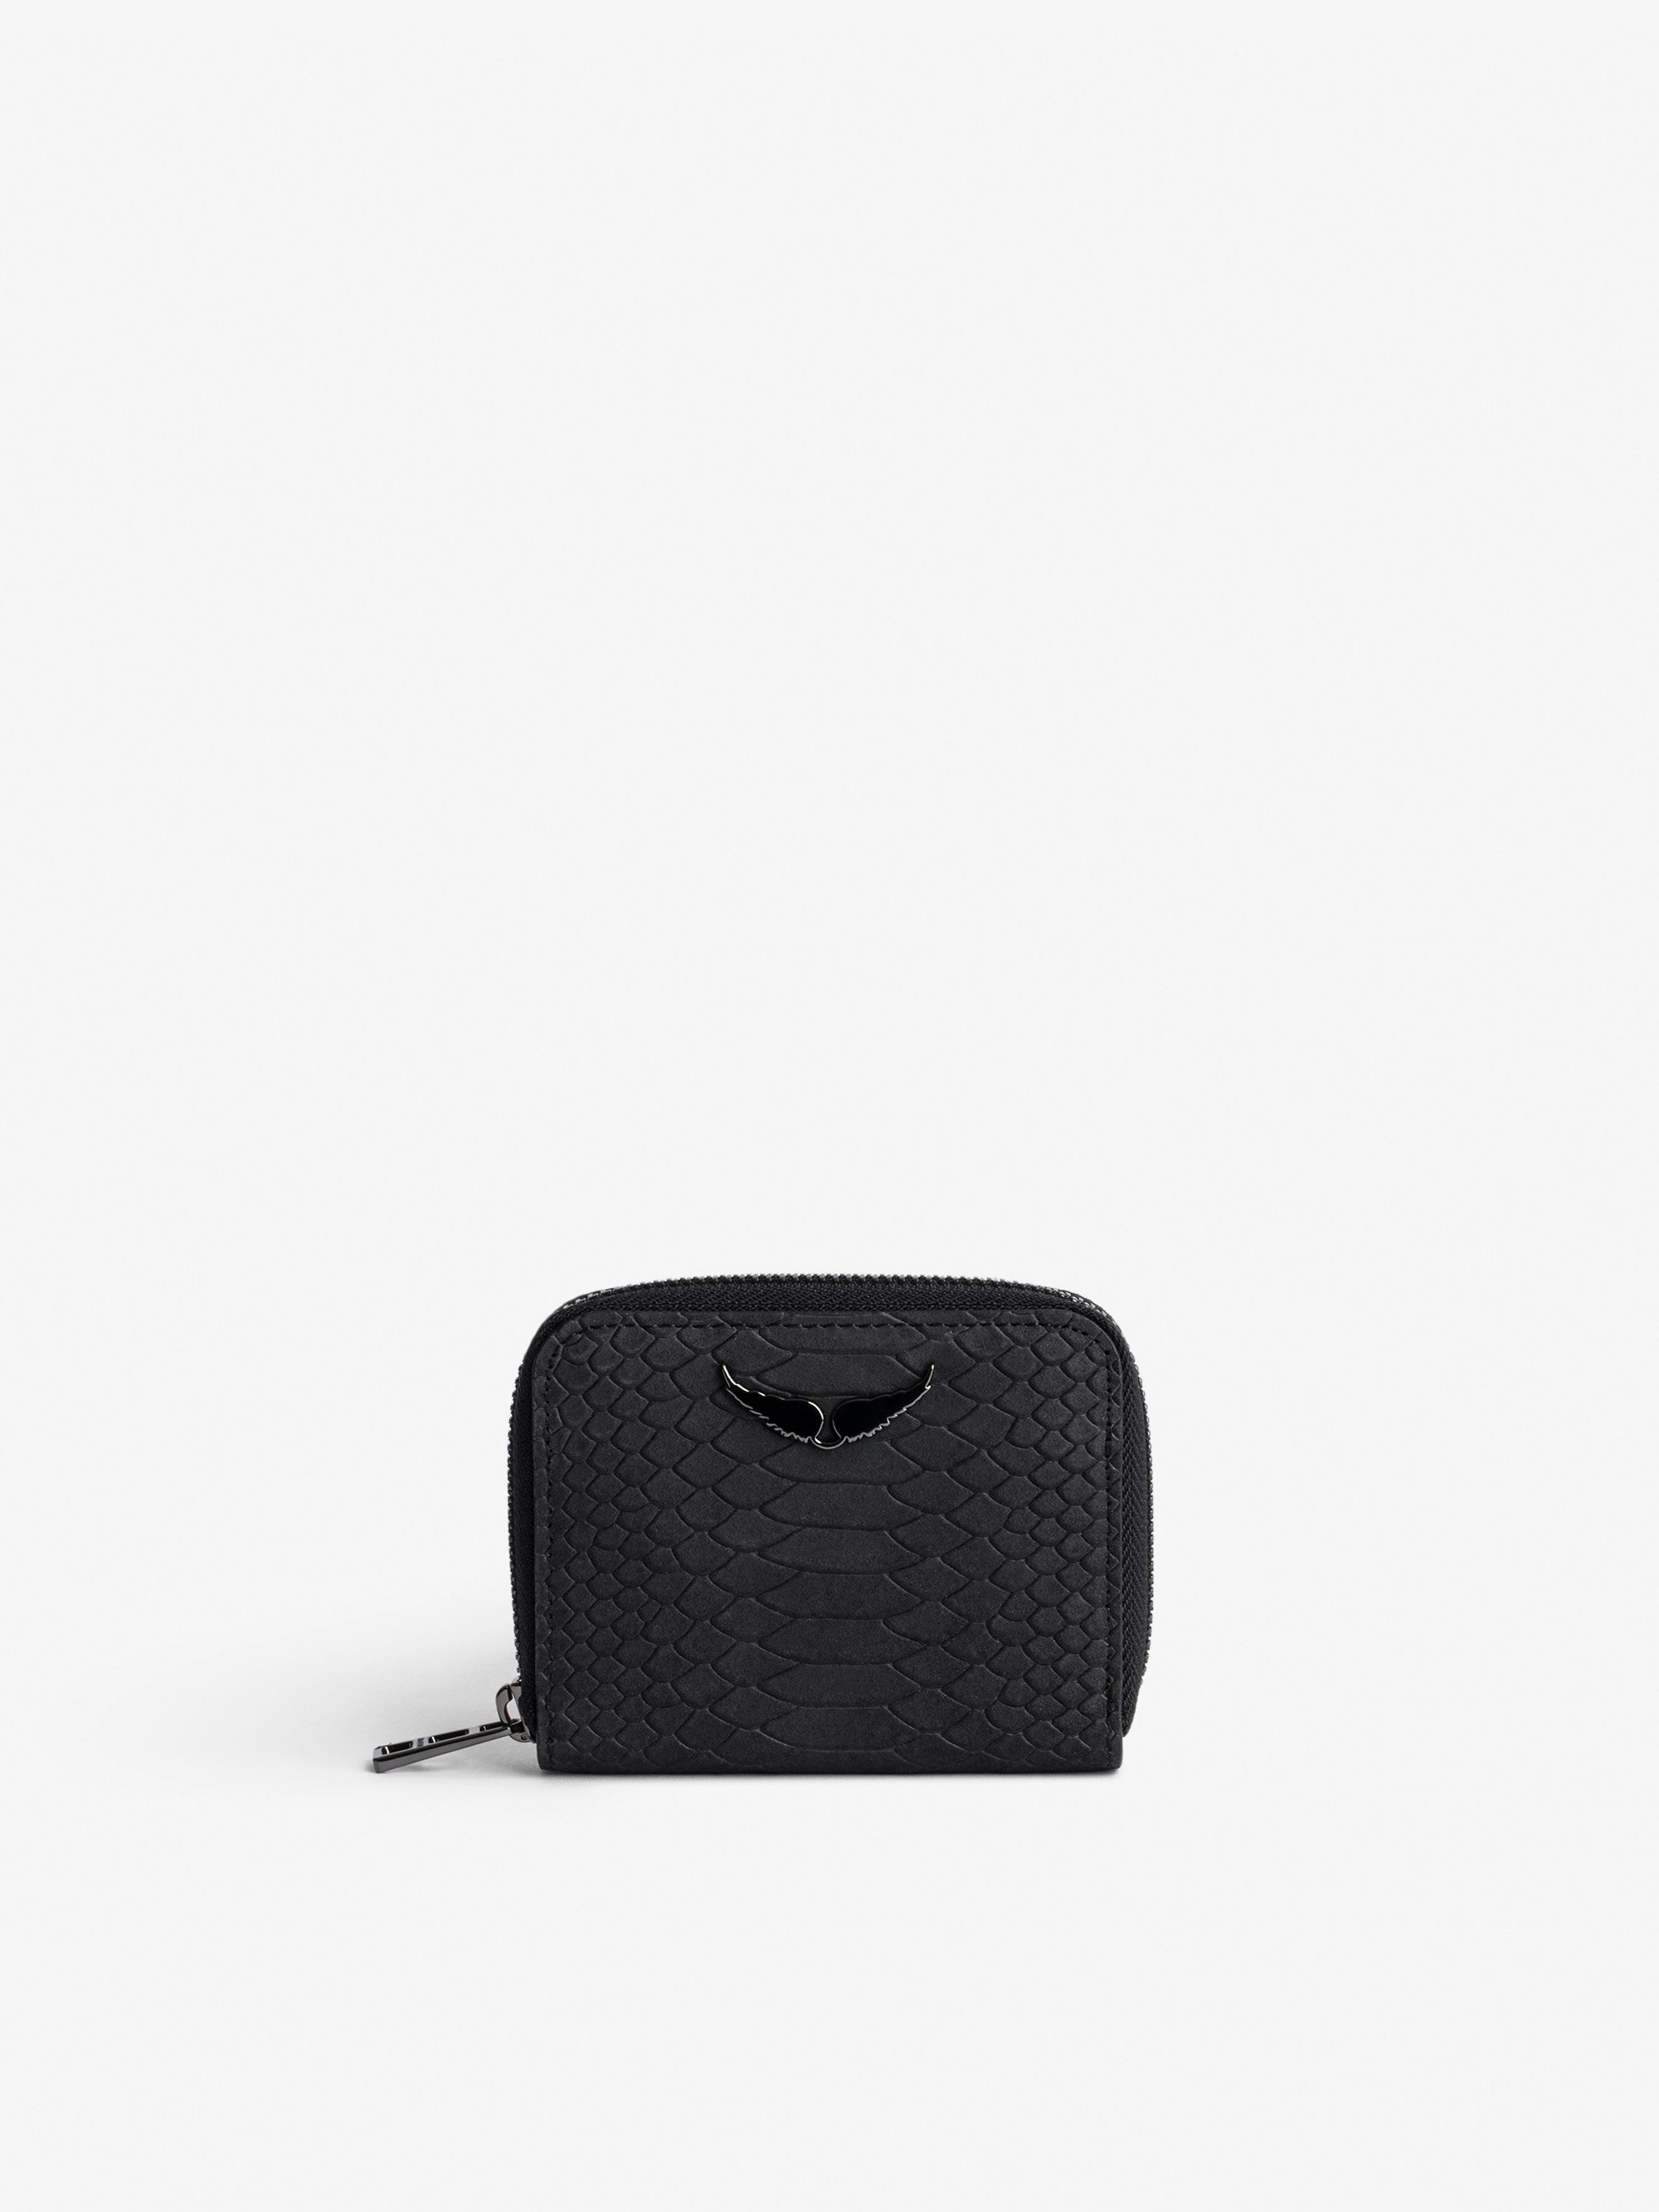 Portemonnaie Mini ZV - Damen-Portemonnaie aus schwarzem Leder in Python-Optik